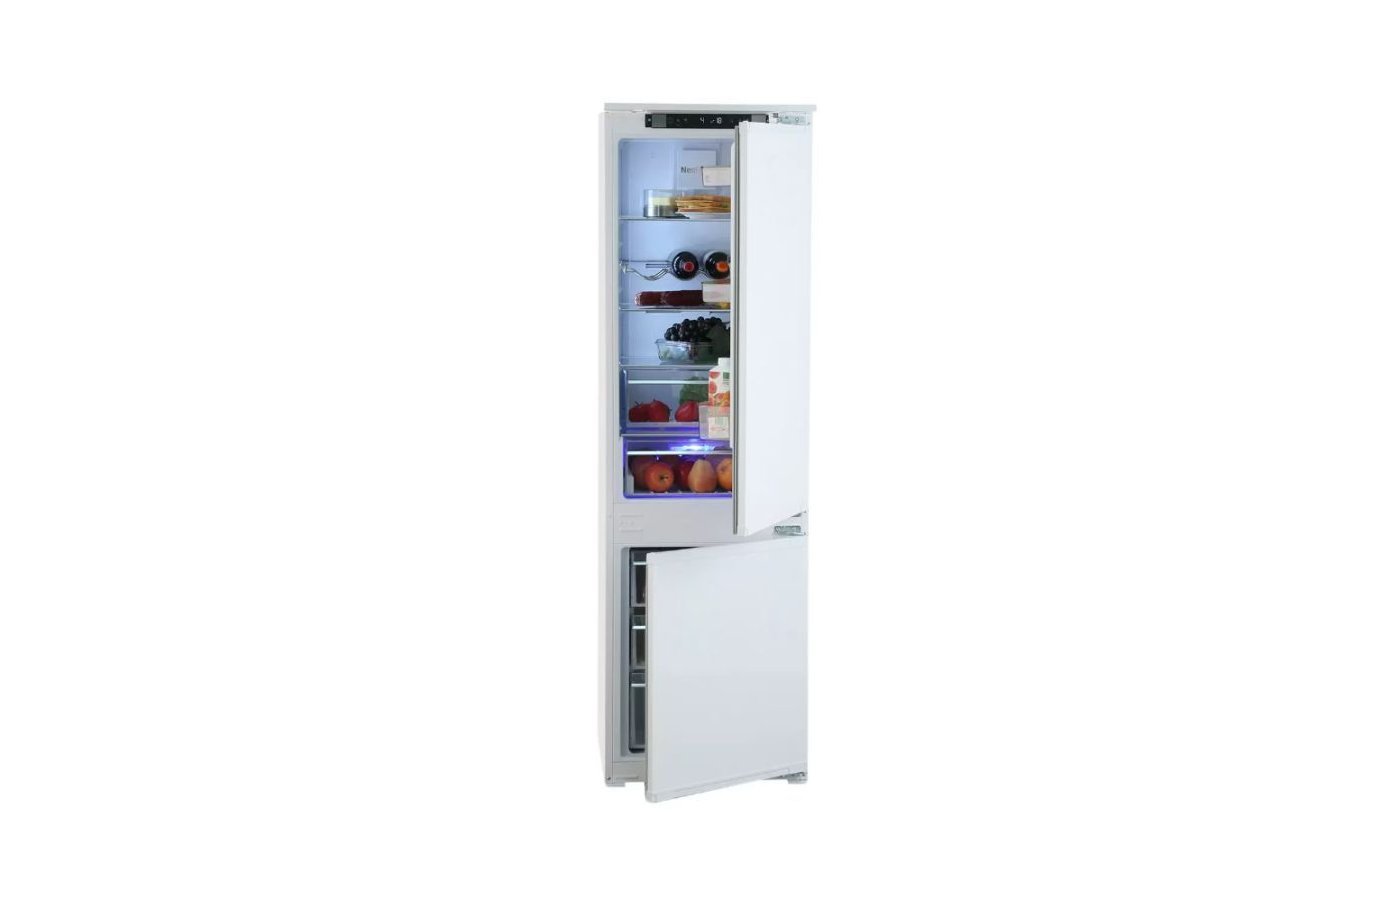 Встраиваемый холодильник beko bcna275e2s. Beko bcna275e2s. Холодильник Beko bcna275e2s схема встраивания холодильника. БЕКО БЦНА 275 встроенный холодильник.